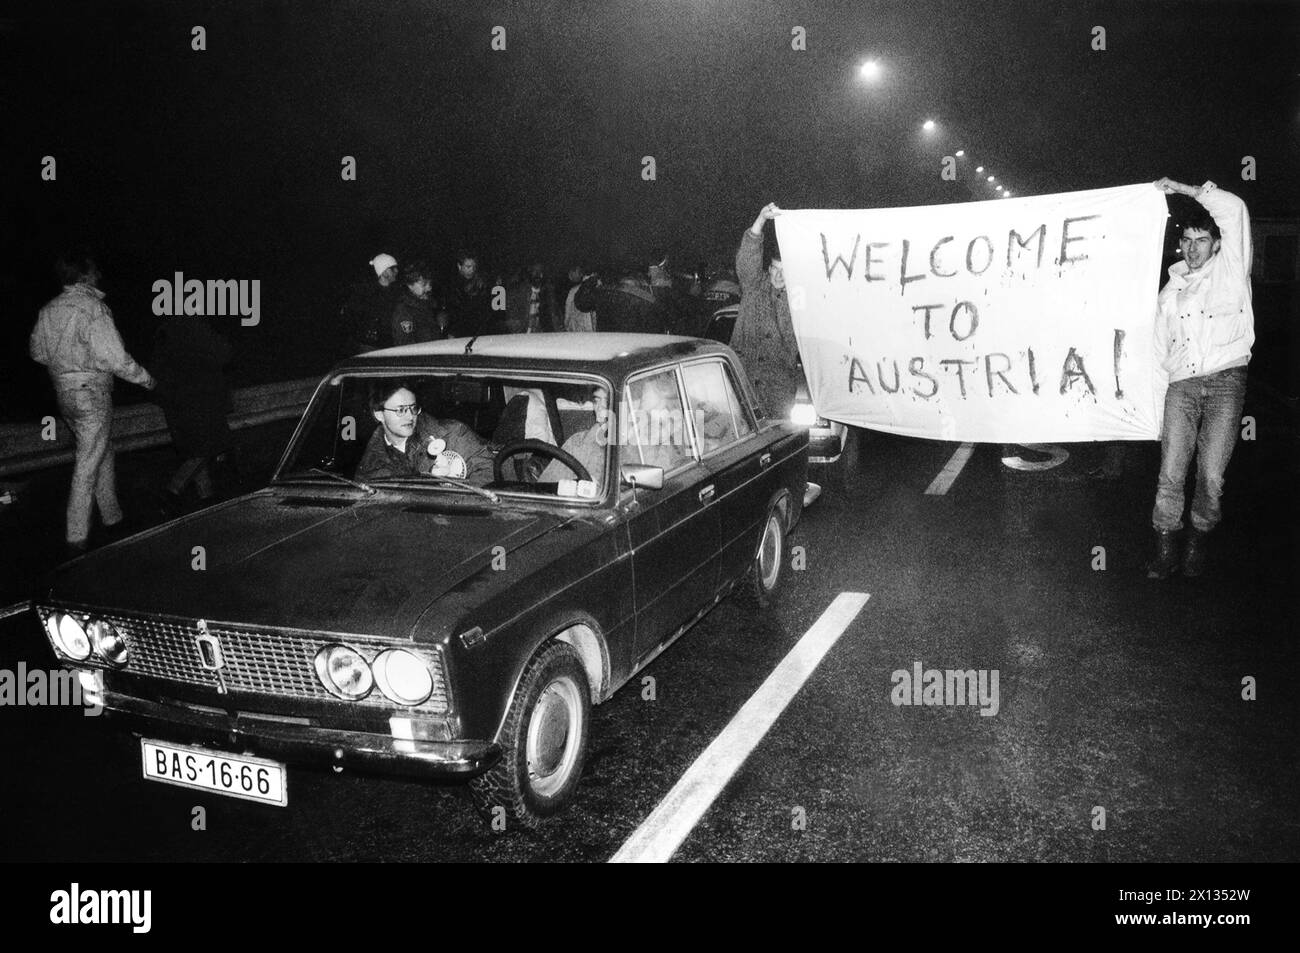 Berg am 4. Dezember 1989: Die Tschechische Bevölkerung überquerte die Grenze zwischen der CSSR und Österreich, nachdem die Regierung neue Bedingungen für den Austritt der CSSR ausgesprochen hatte. Im Bild: Szene auf der österreichischen Seite des Grenzübergangs. - 19891204_PD0011 - Rechteinfo: Rechte verwaltet (RM) Stockfoto